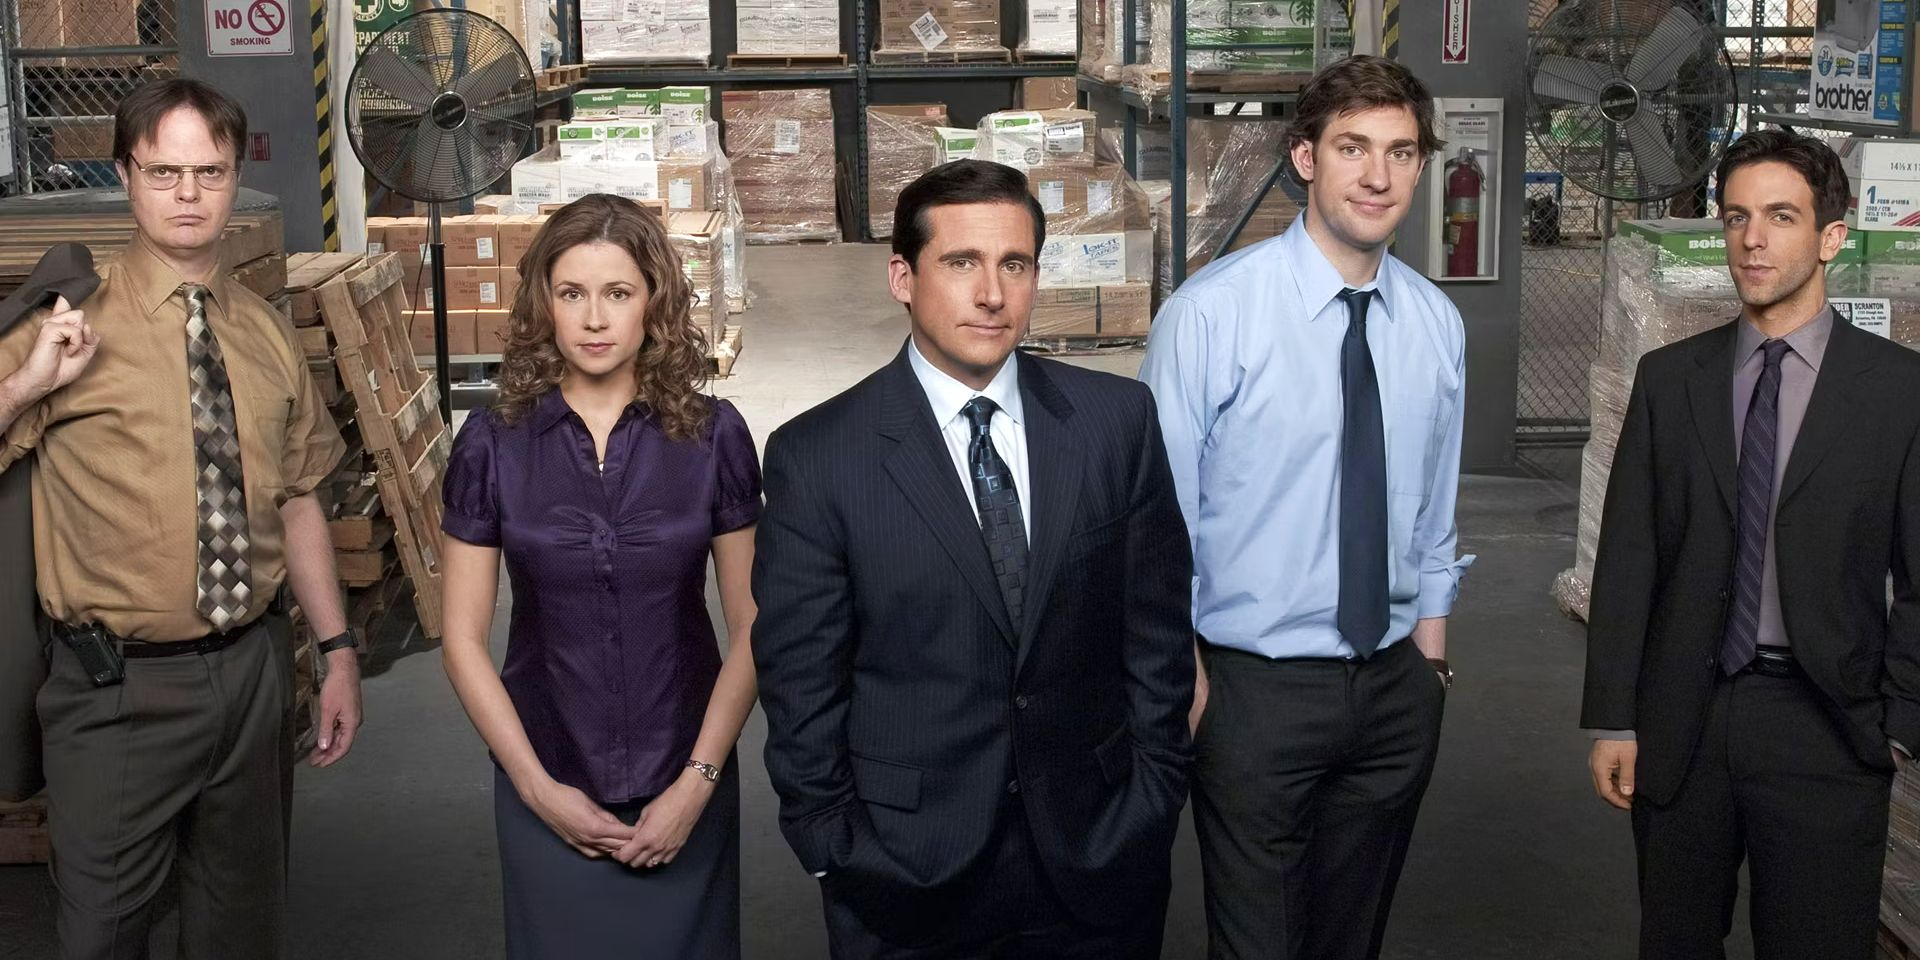 O elenco de personagens principais do Office - Dwight, Pam, Michael, Jim, Ryan